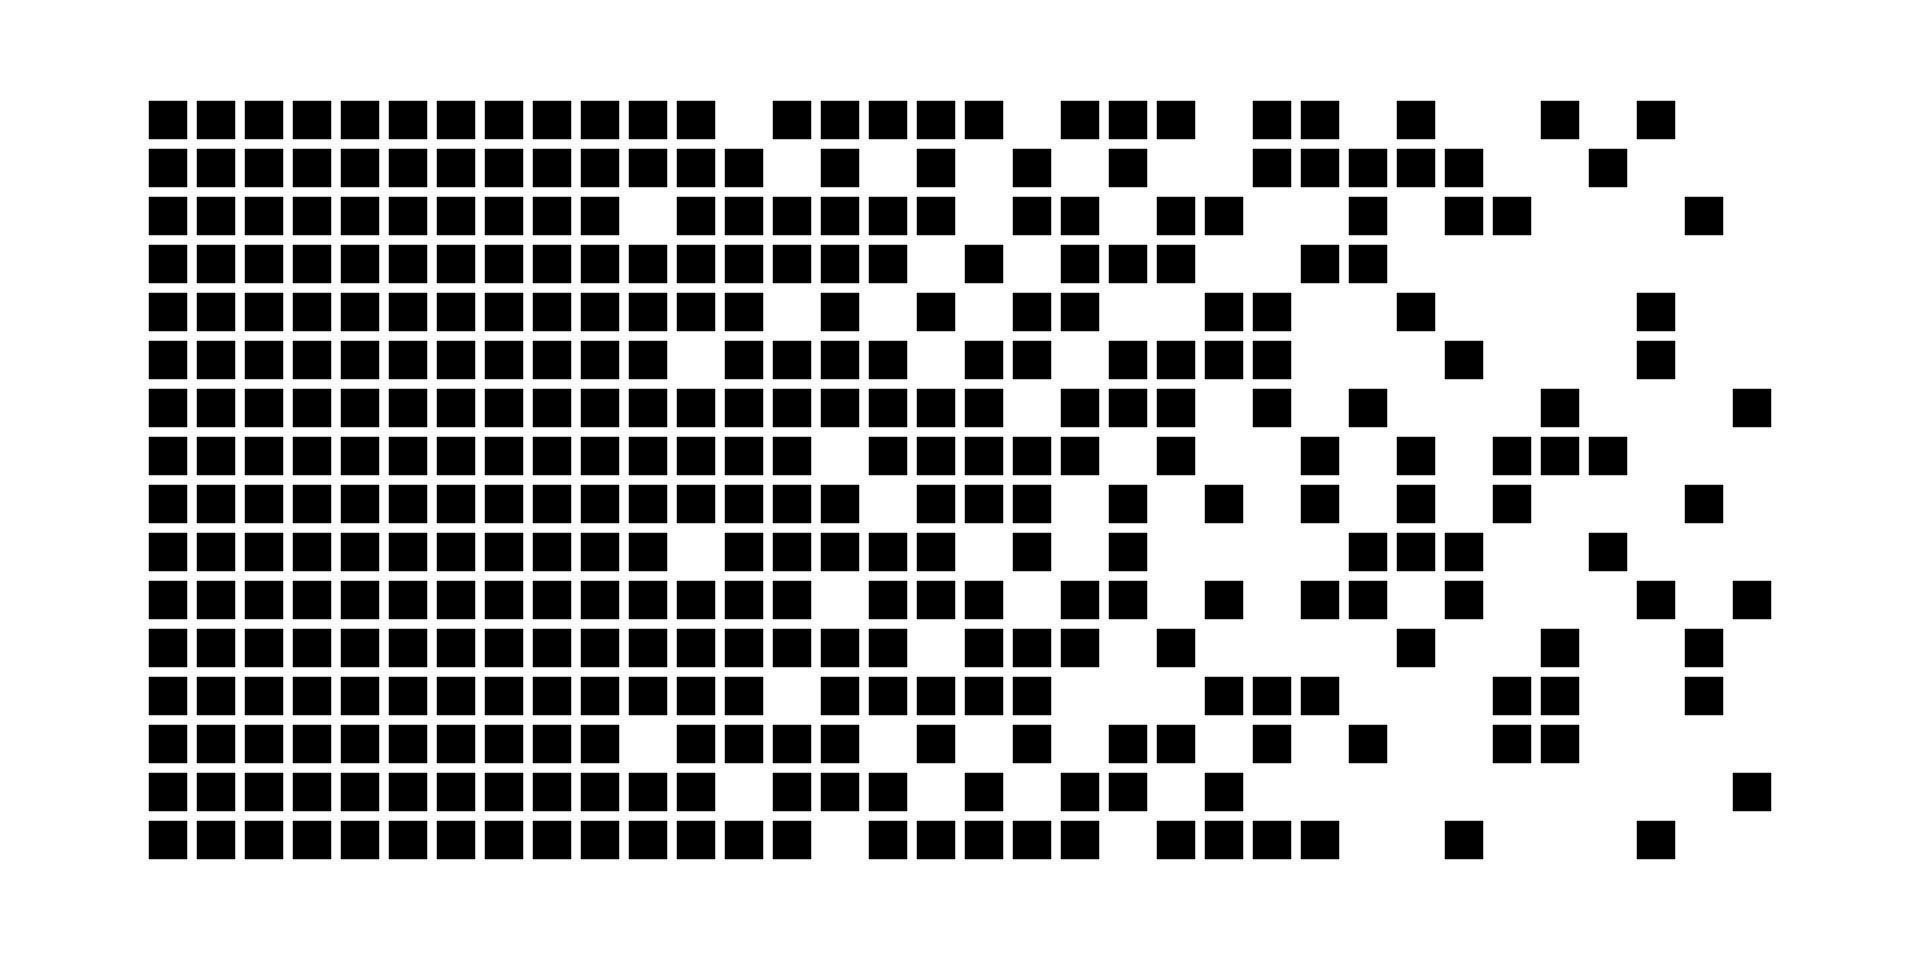 fondo de desintegración de píxeles. fragmento de semitono. patrón de puntos dispersos. concepto de desintegración. texturas de mosaico de píxeles cuadrados con partículas cuadradas. Ilustración vectorial sobre fondo blanco vector